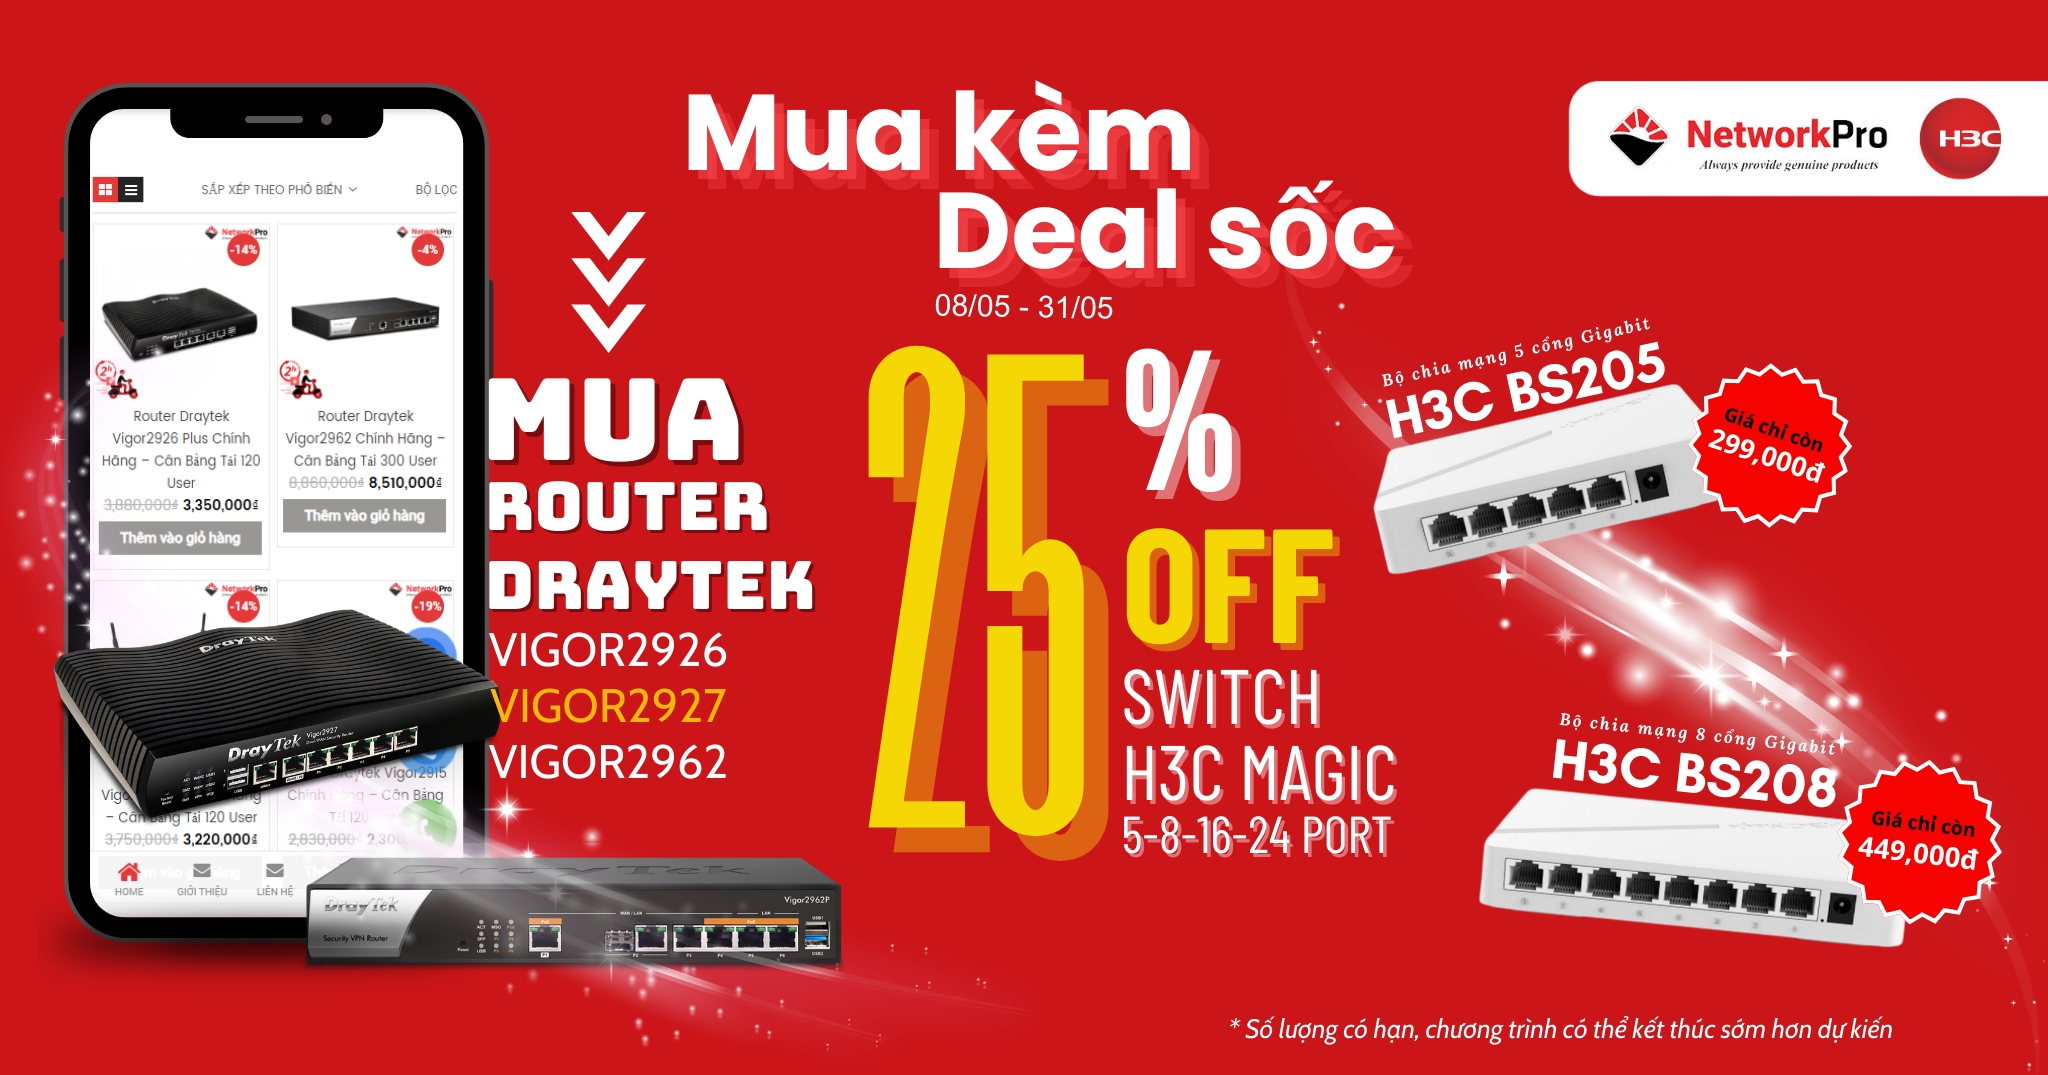 Mua Router Draytek được mua kèm Switch H3C với giá ưu đãi giảm 25% 